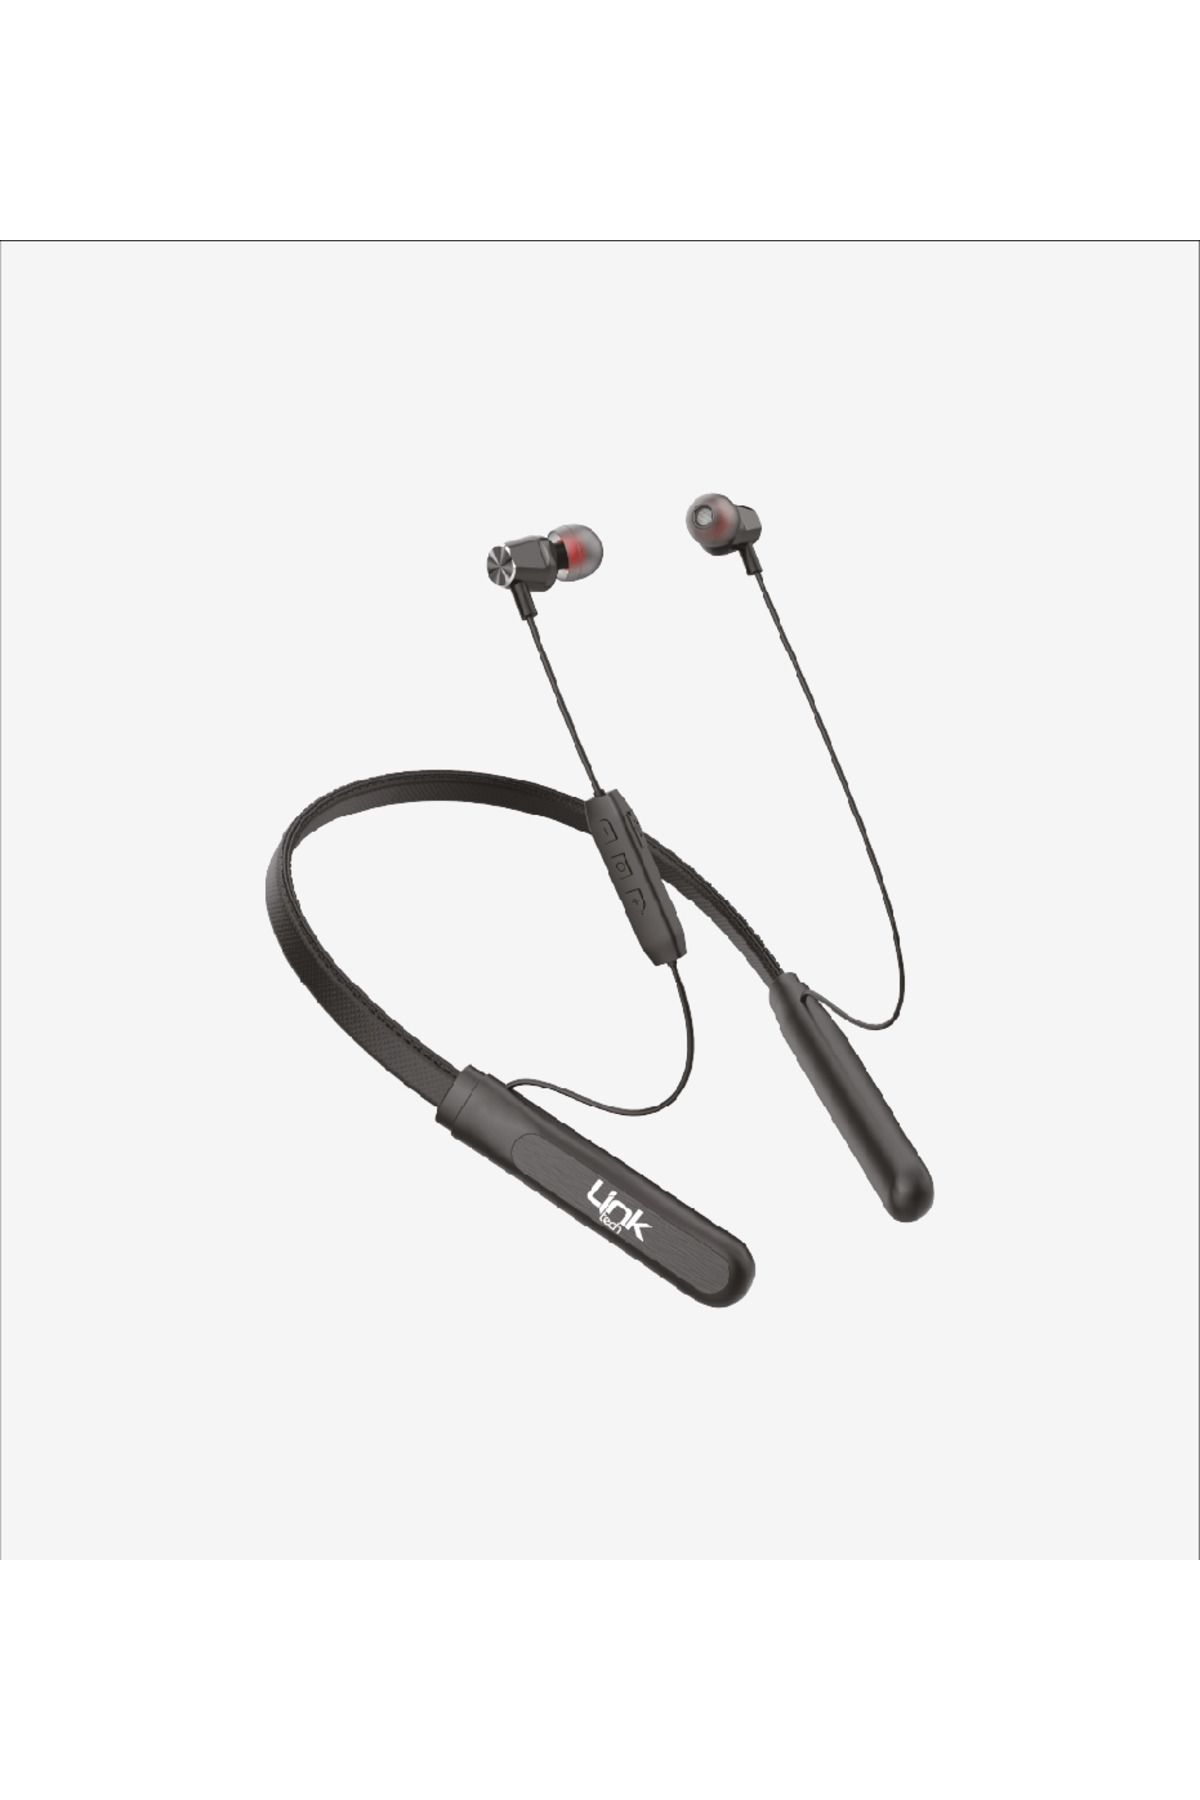 Linktech Boyun Askılı Silikonlu Spor Bluetooth Kulaklık H995 83 Saat şarj kapasiteli